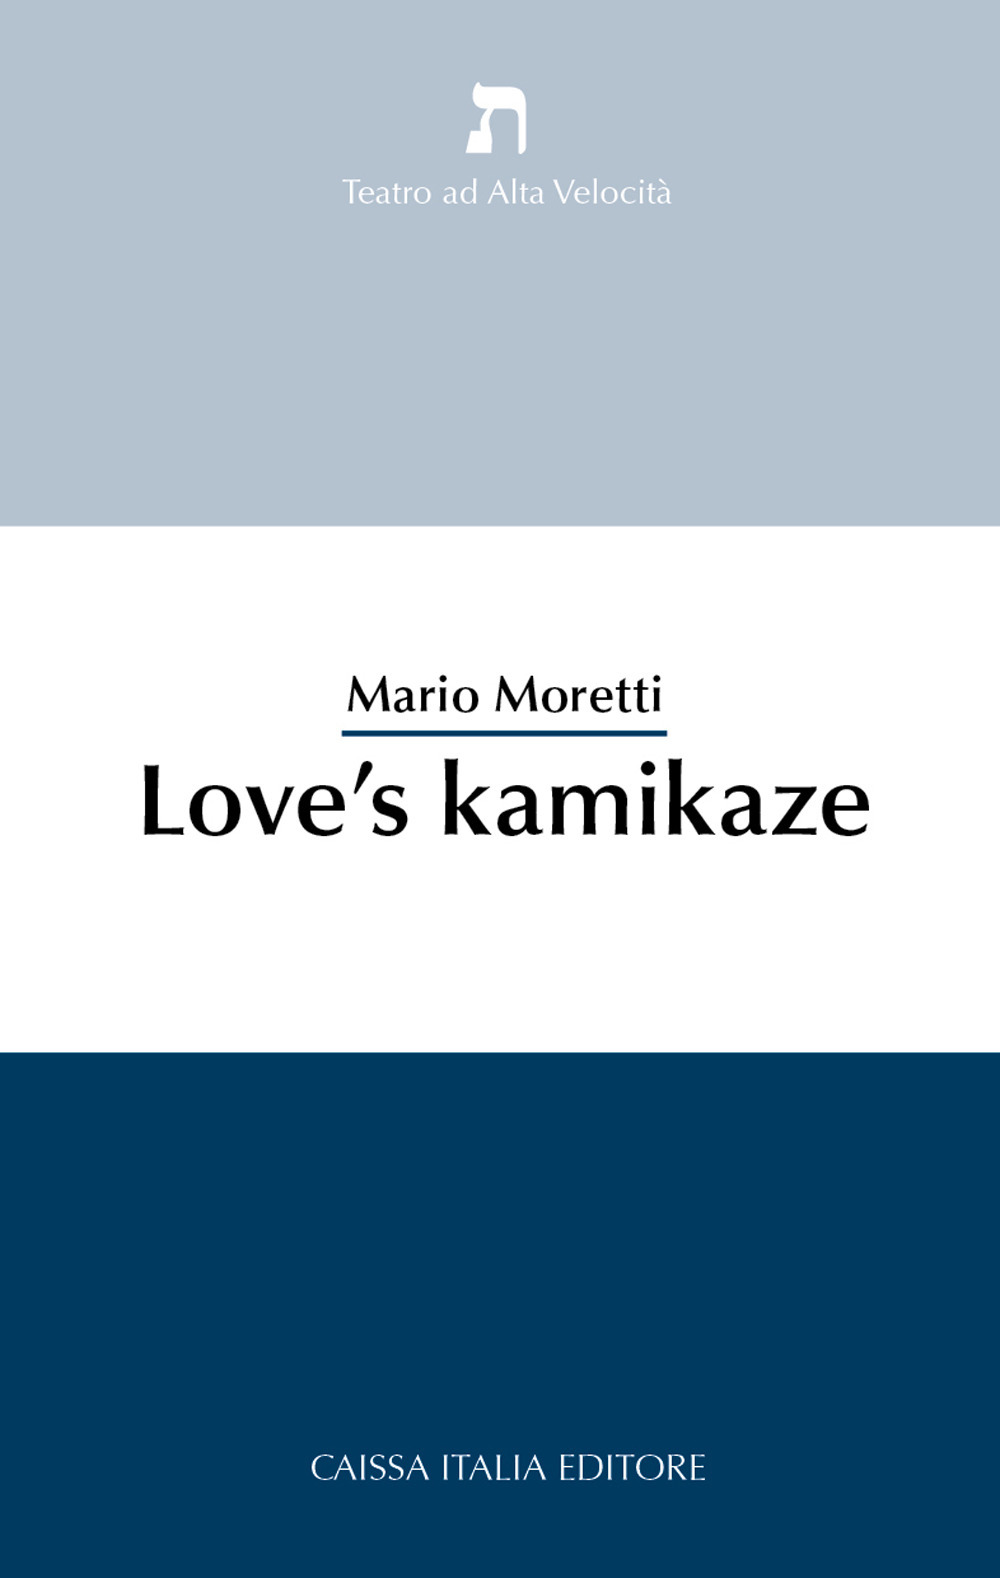 Love's kamikaze